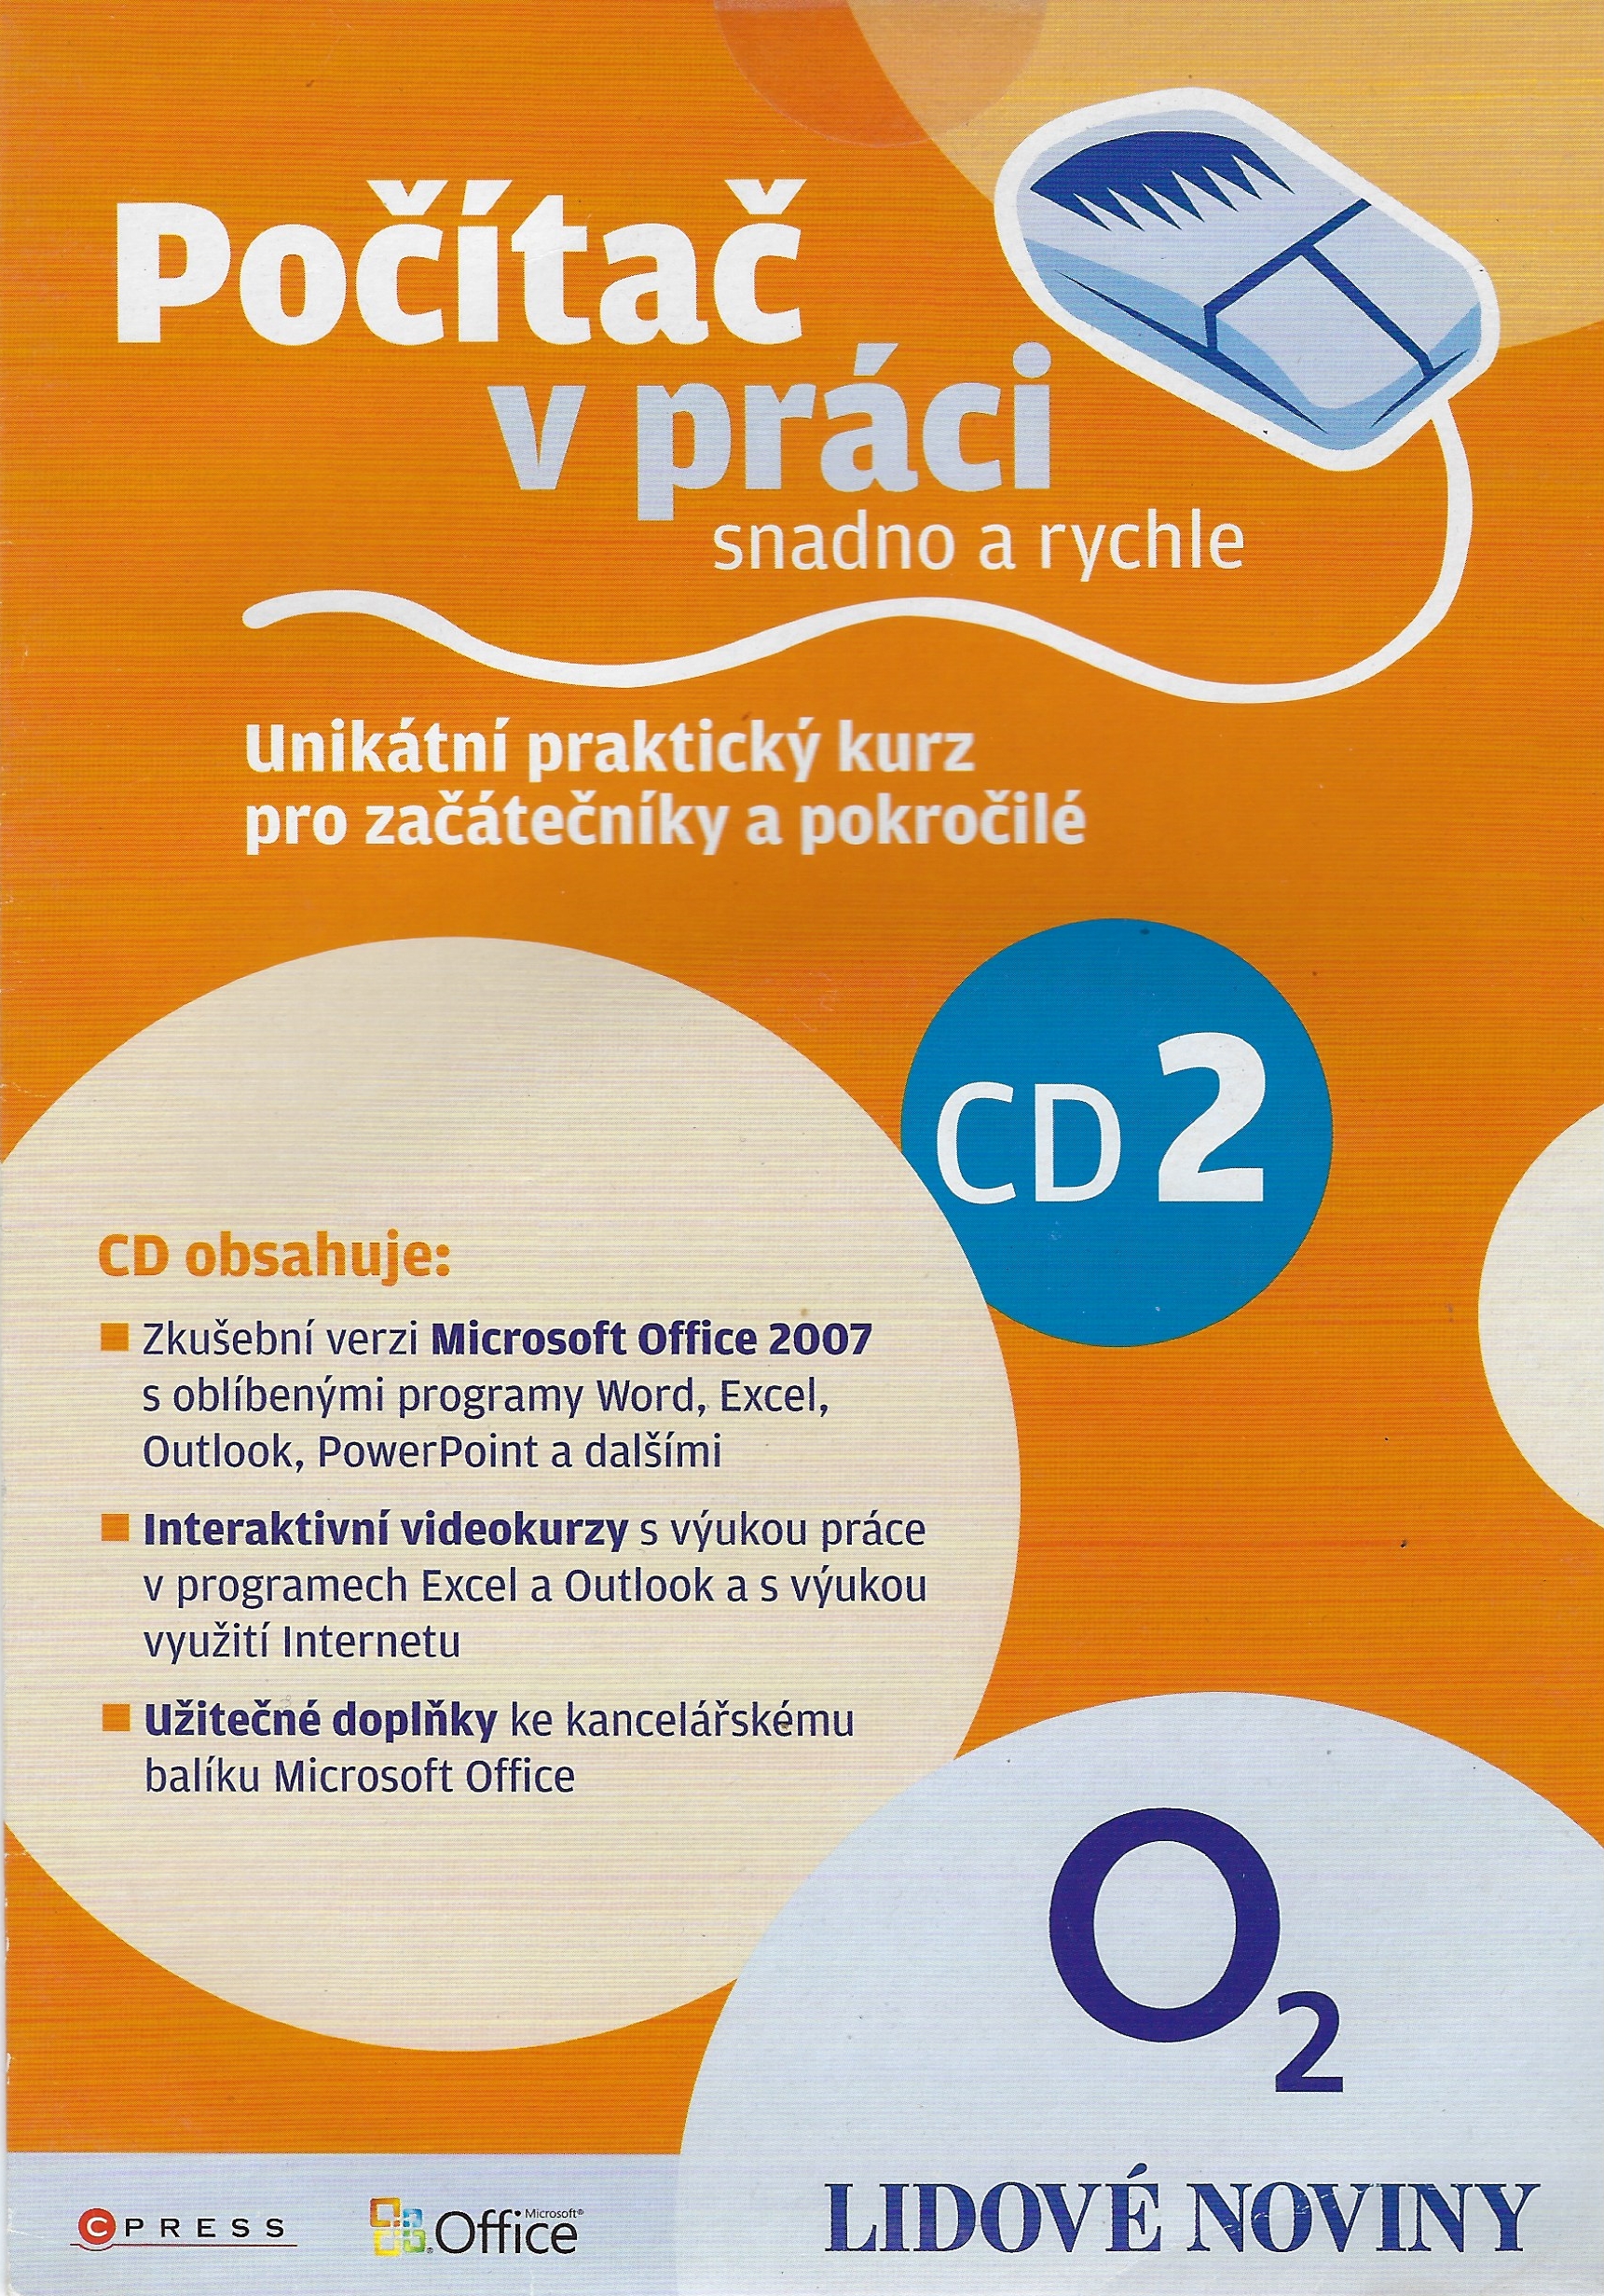 CD-ROM - Počítač v práci snadno a rychle-CD 2